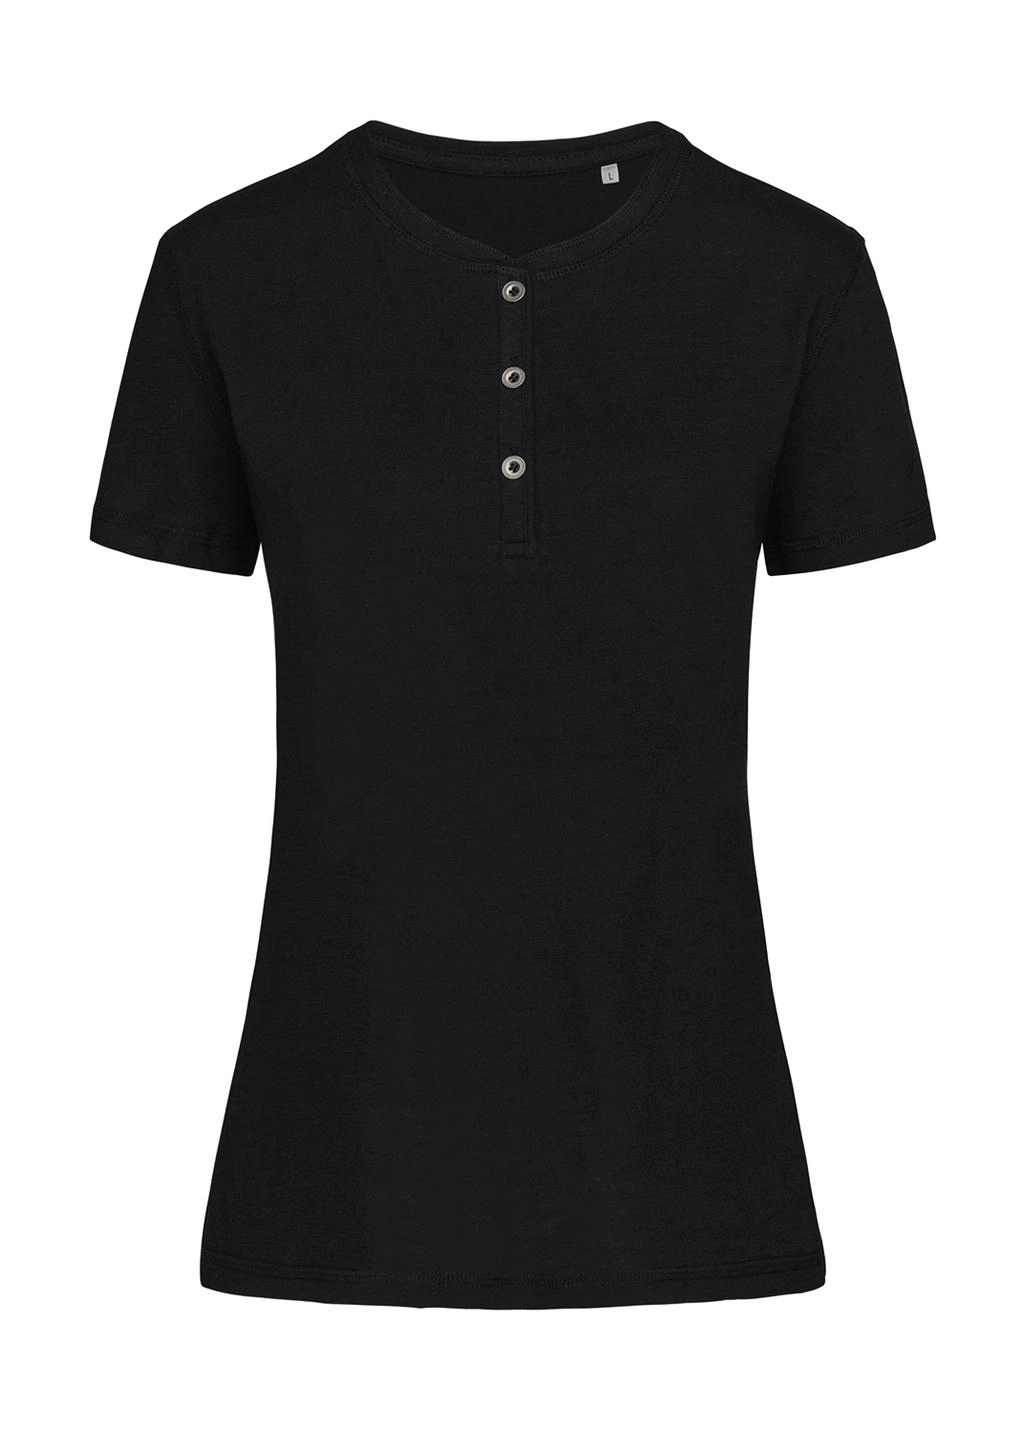 Sharon Henley T-Shirt zum Besticken und Bedrucken in der Farbe Black Opal mit Ihren Logo, Schriftzug oder Motiv.